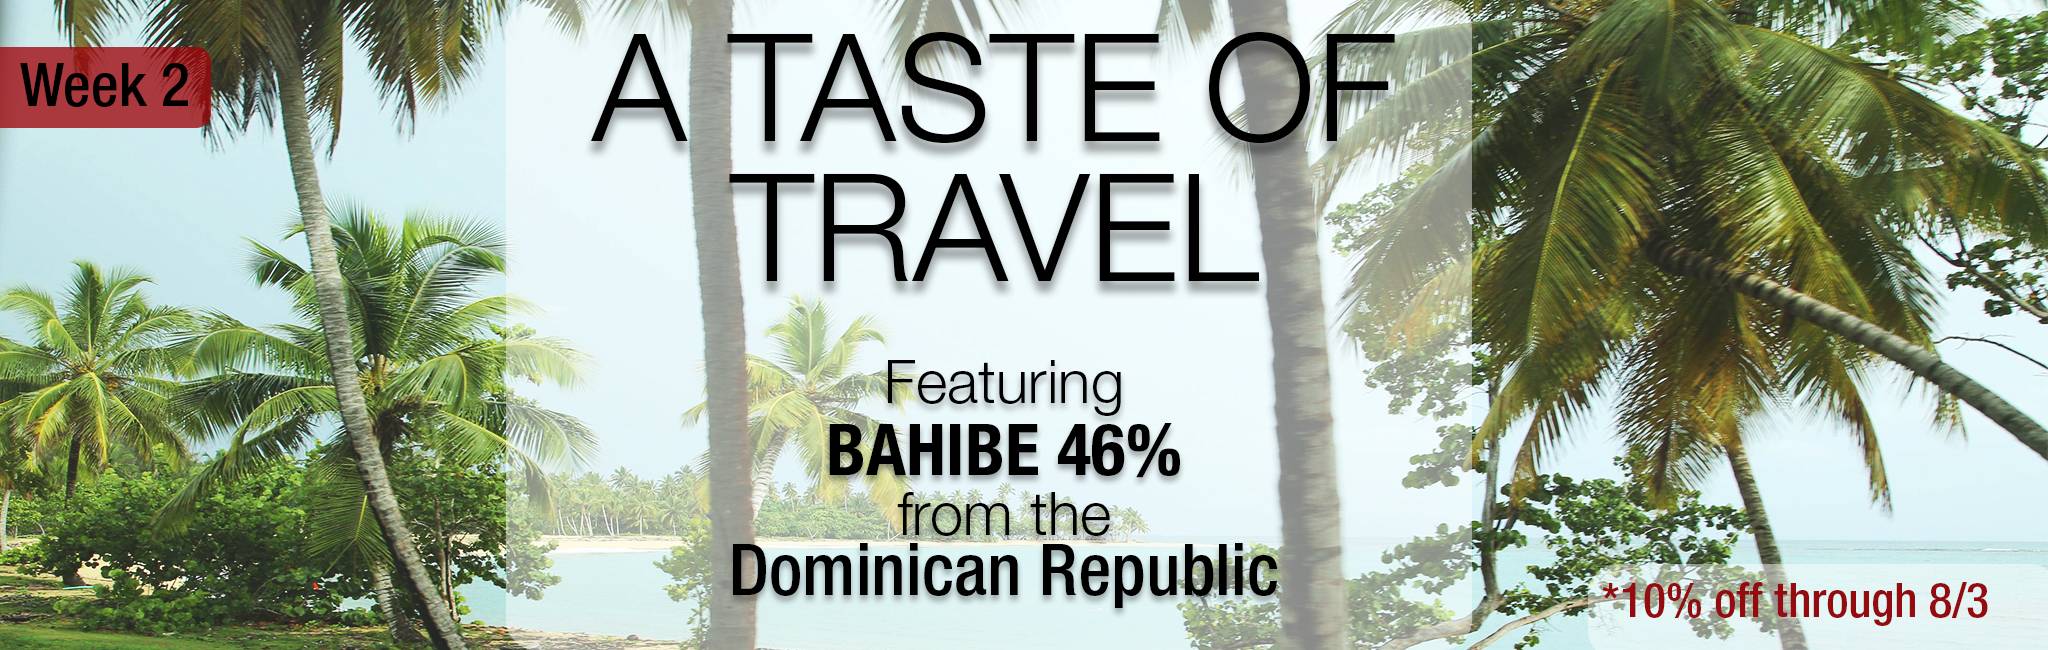 A Taste of Travel_Bahibe